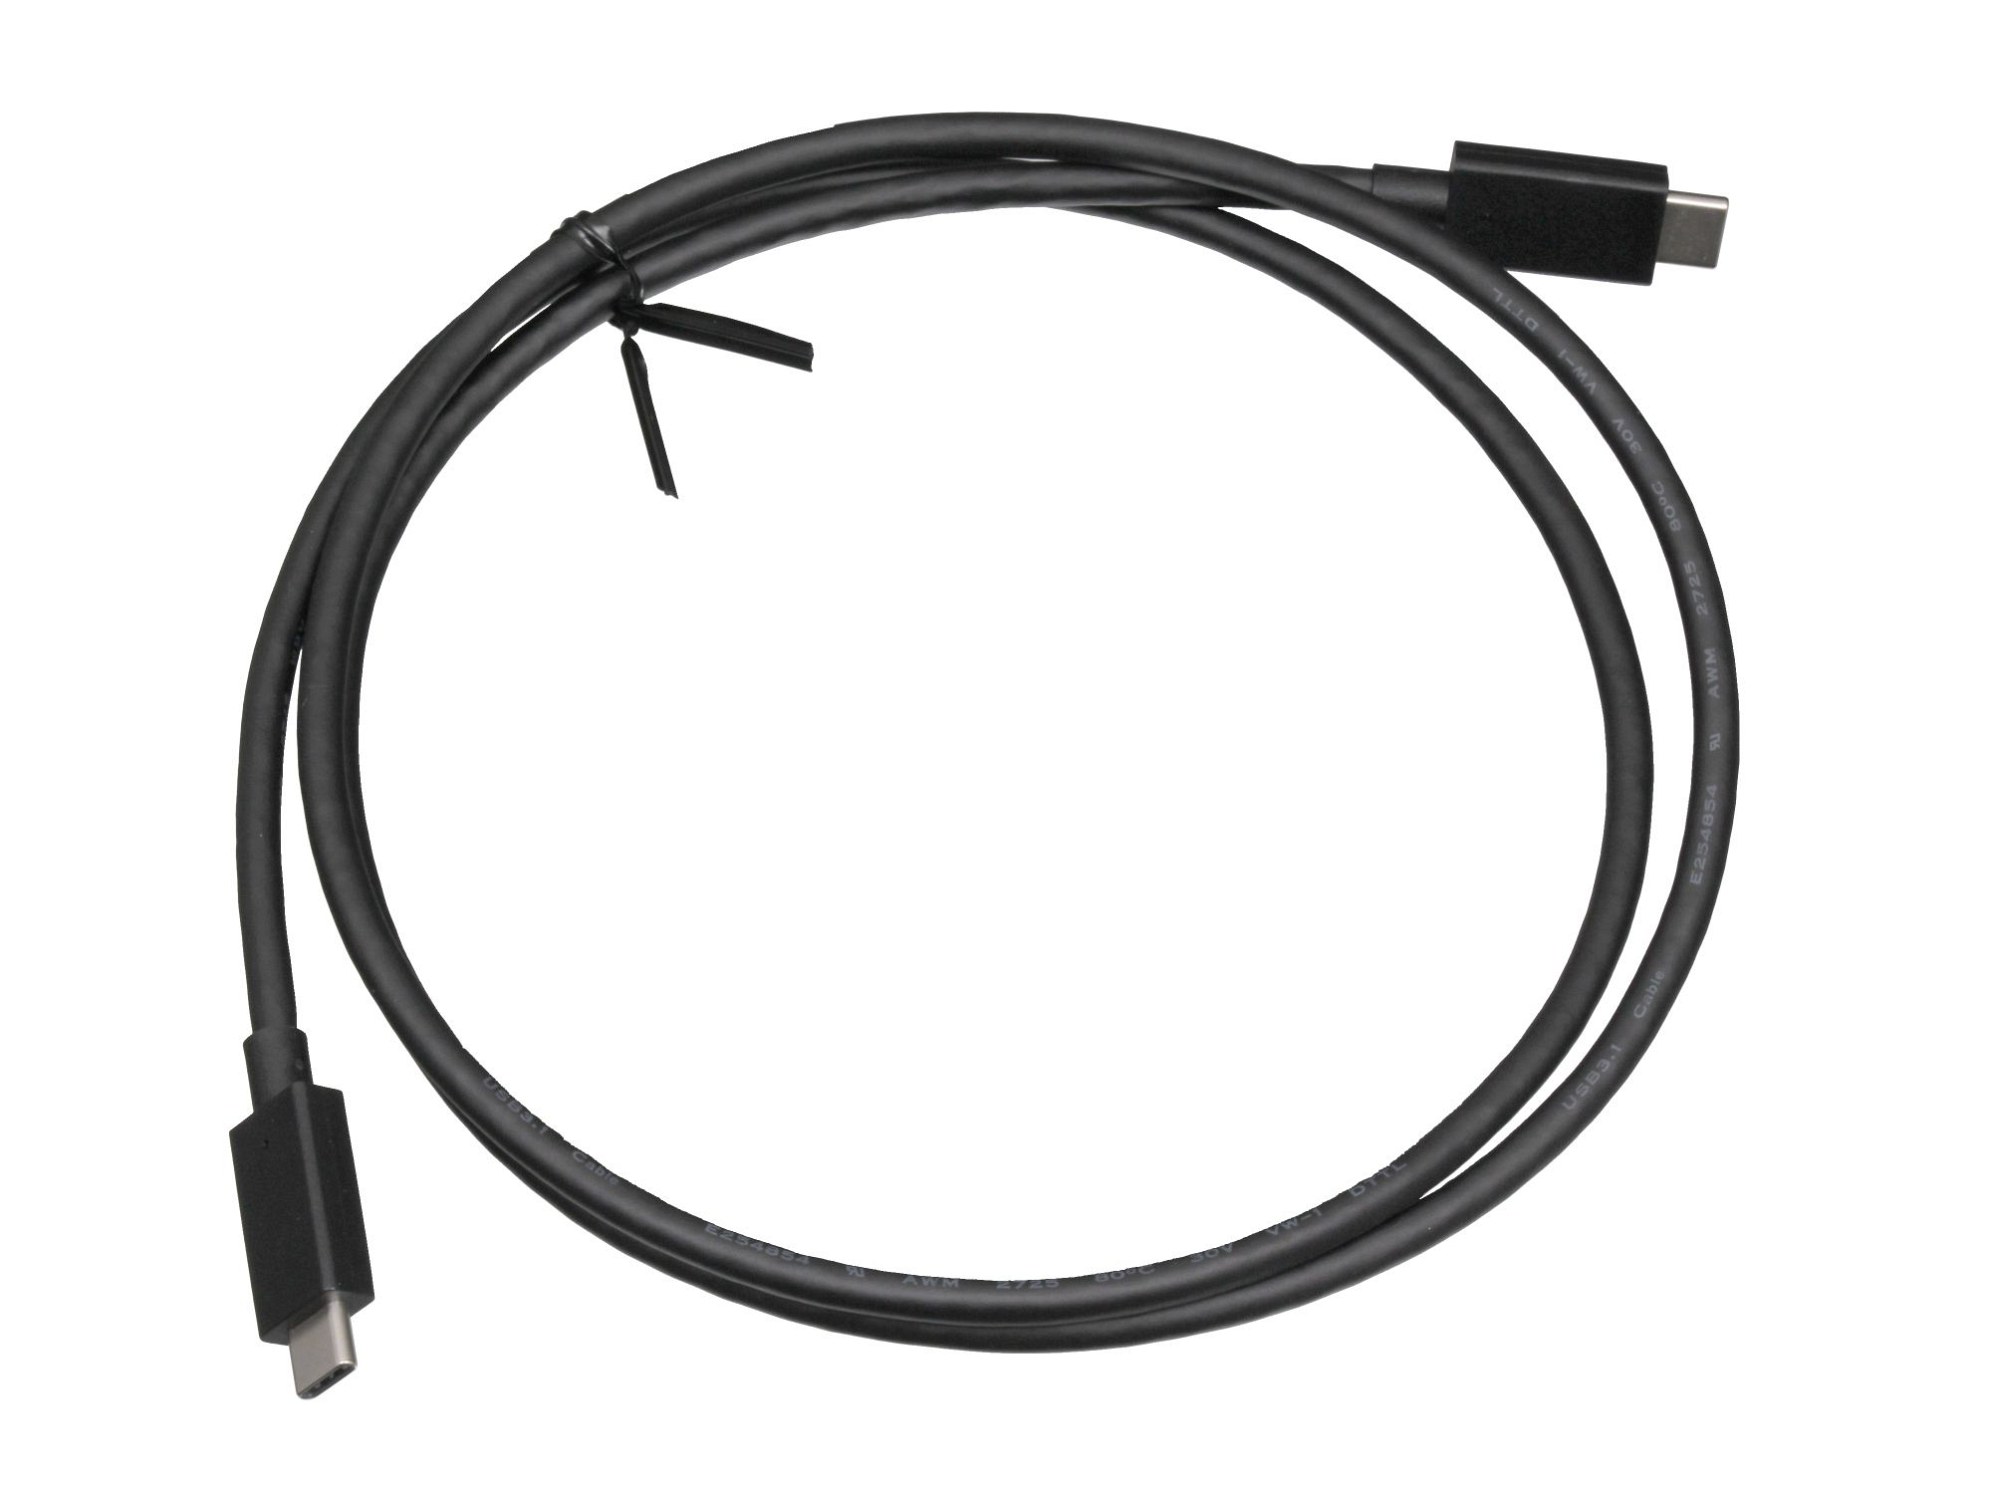 Asus 14011-02510300 USB-C Daten- / Ladekabel schwarz 1,10m 3.1